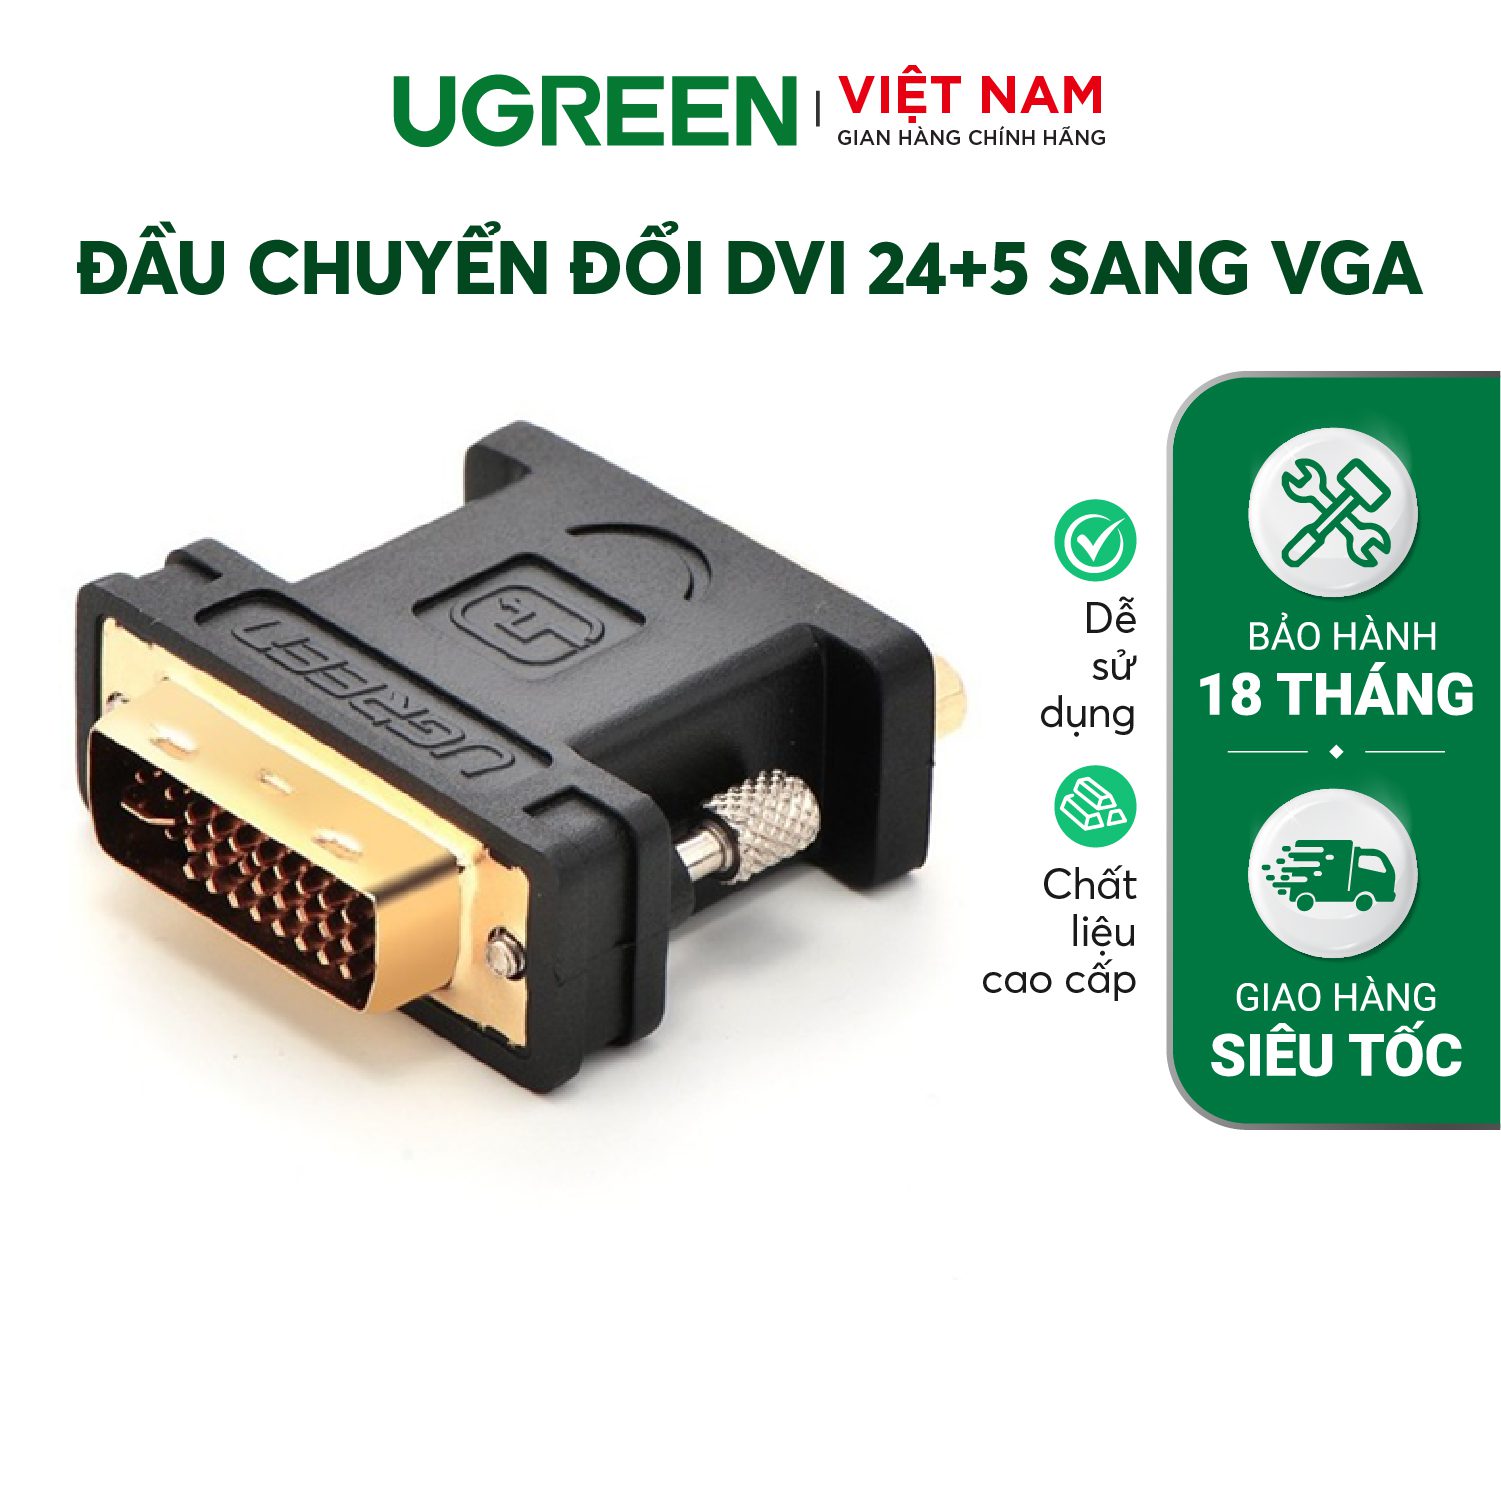 Đầu chuyển đổi DVI 24+5 sang VGA (15 chân) UGREEN 20122 Đầu kết nối mạ vàng 24K – Ugreen Việt Nam